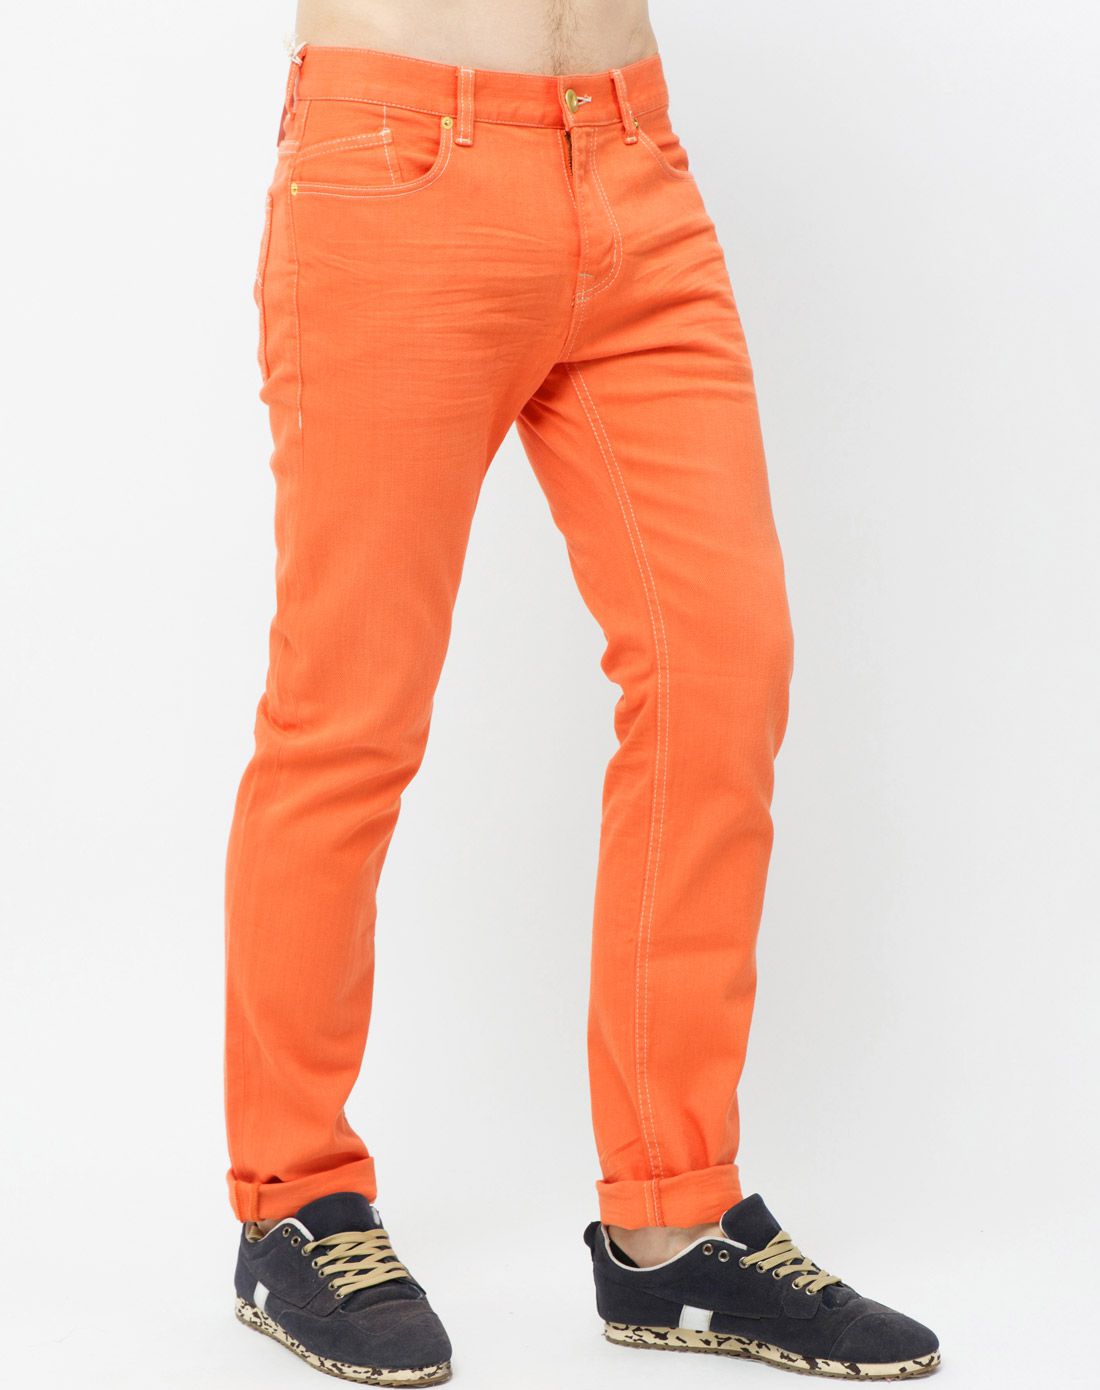 时尚彩裤 男式橙色牛仔裤 直筒中腰